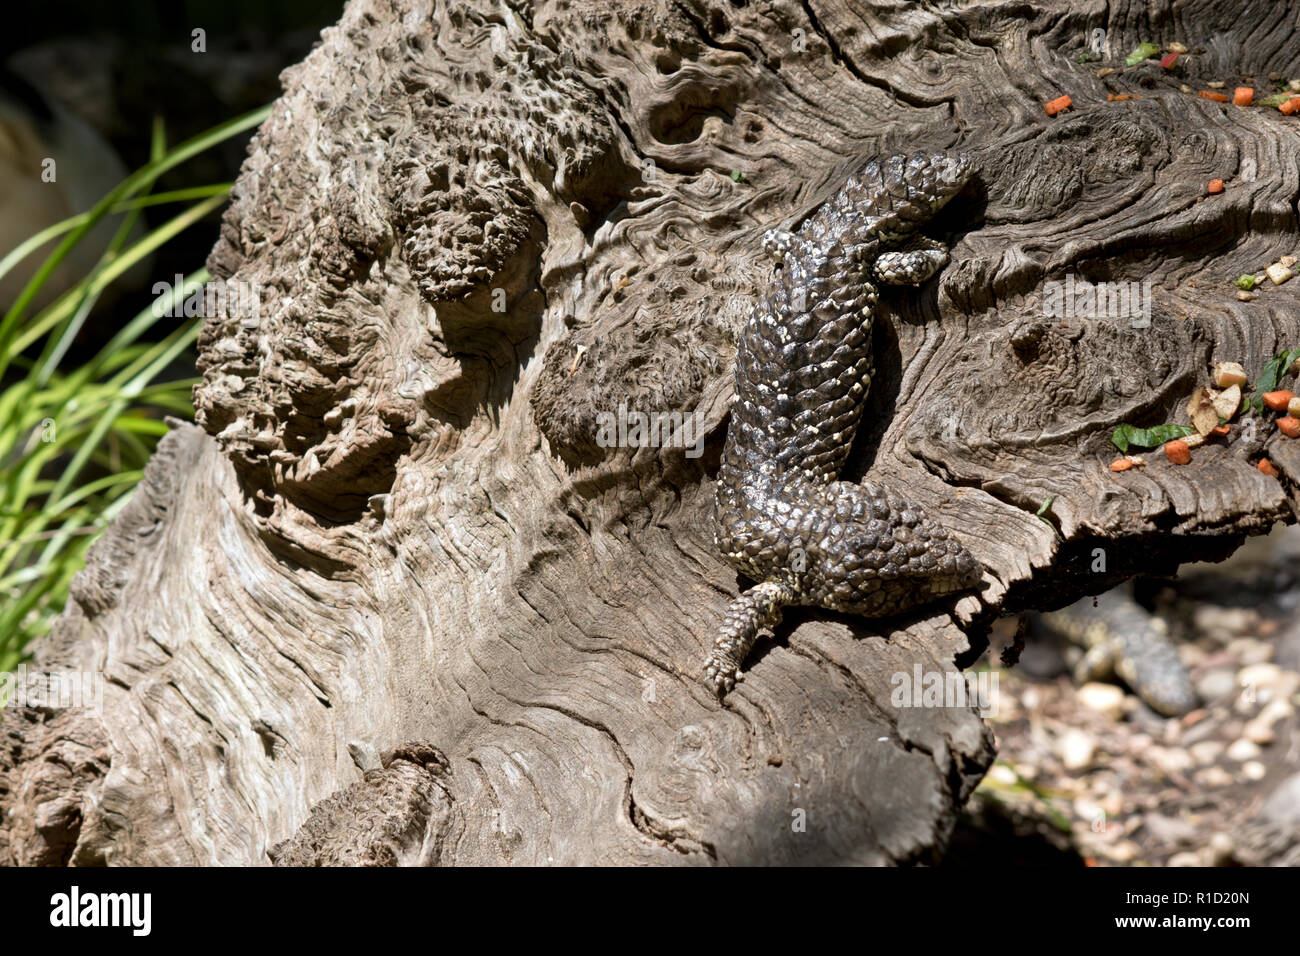 Le bardeau retour lizard se cache à la vue il utilise son camouflage naturel pour se protéger de ses ennemis Banque D'Images